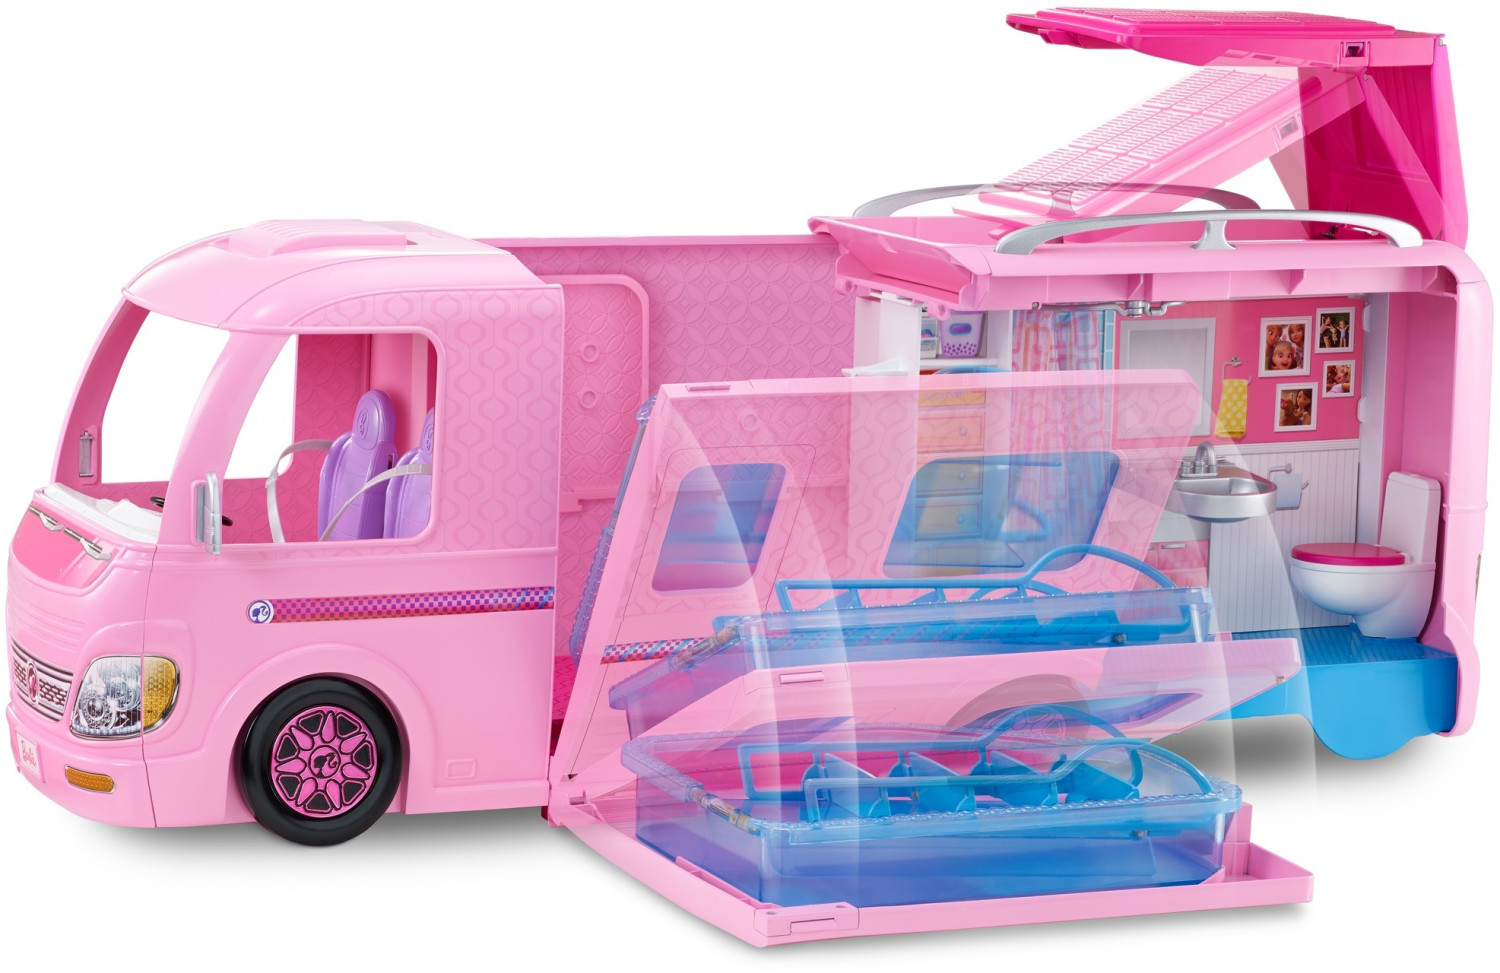 Soldes Barbie Camping-car transformable (FBR34) 2024 au meilleur